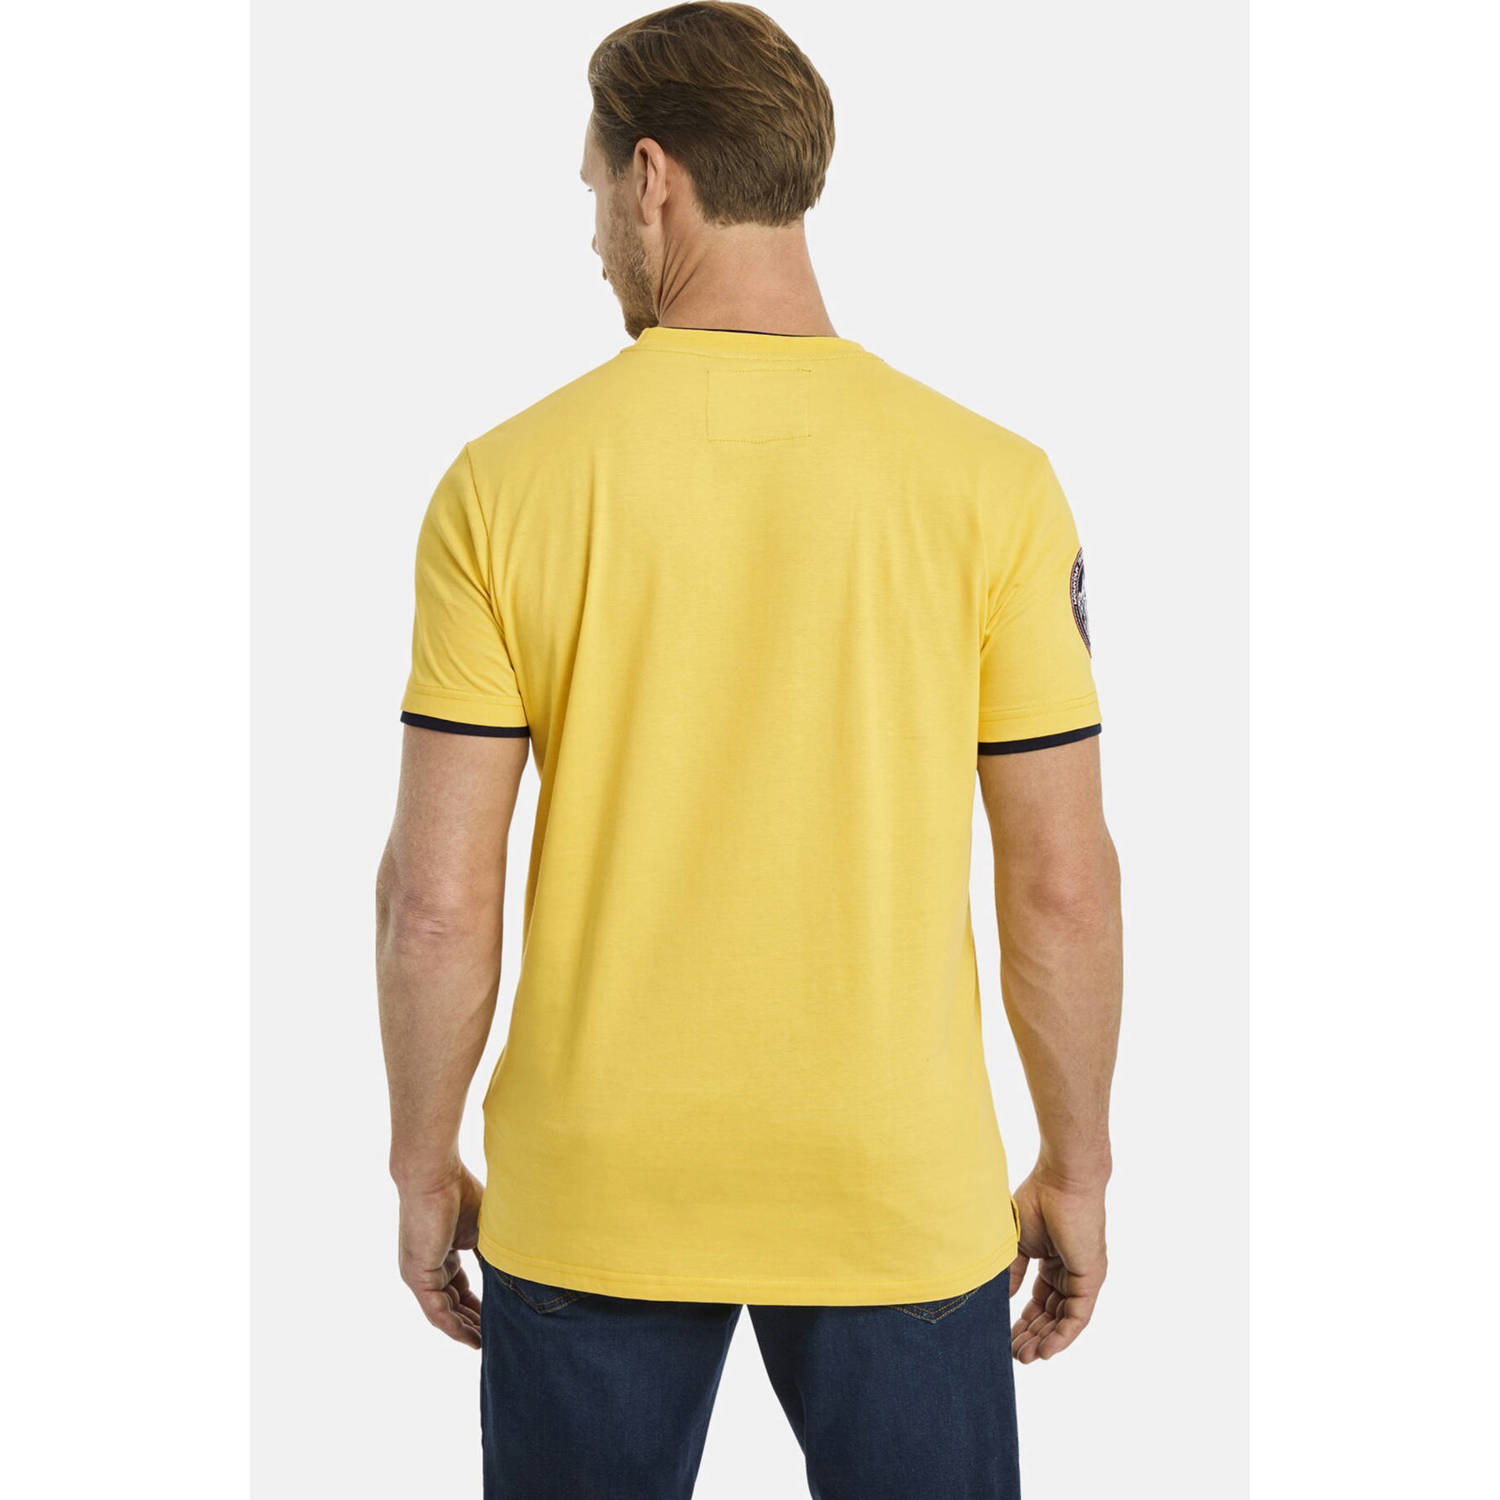 Jan Vanderstorm oversized T-shirt SÖLVE Plus Size met printopdruk geel